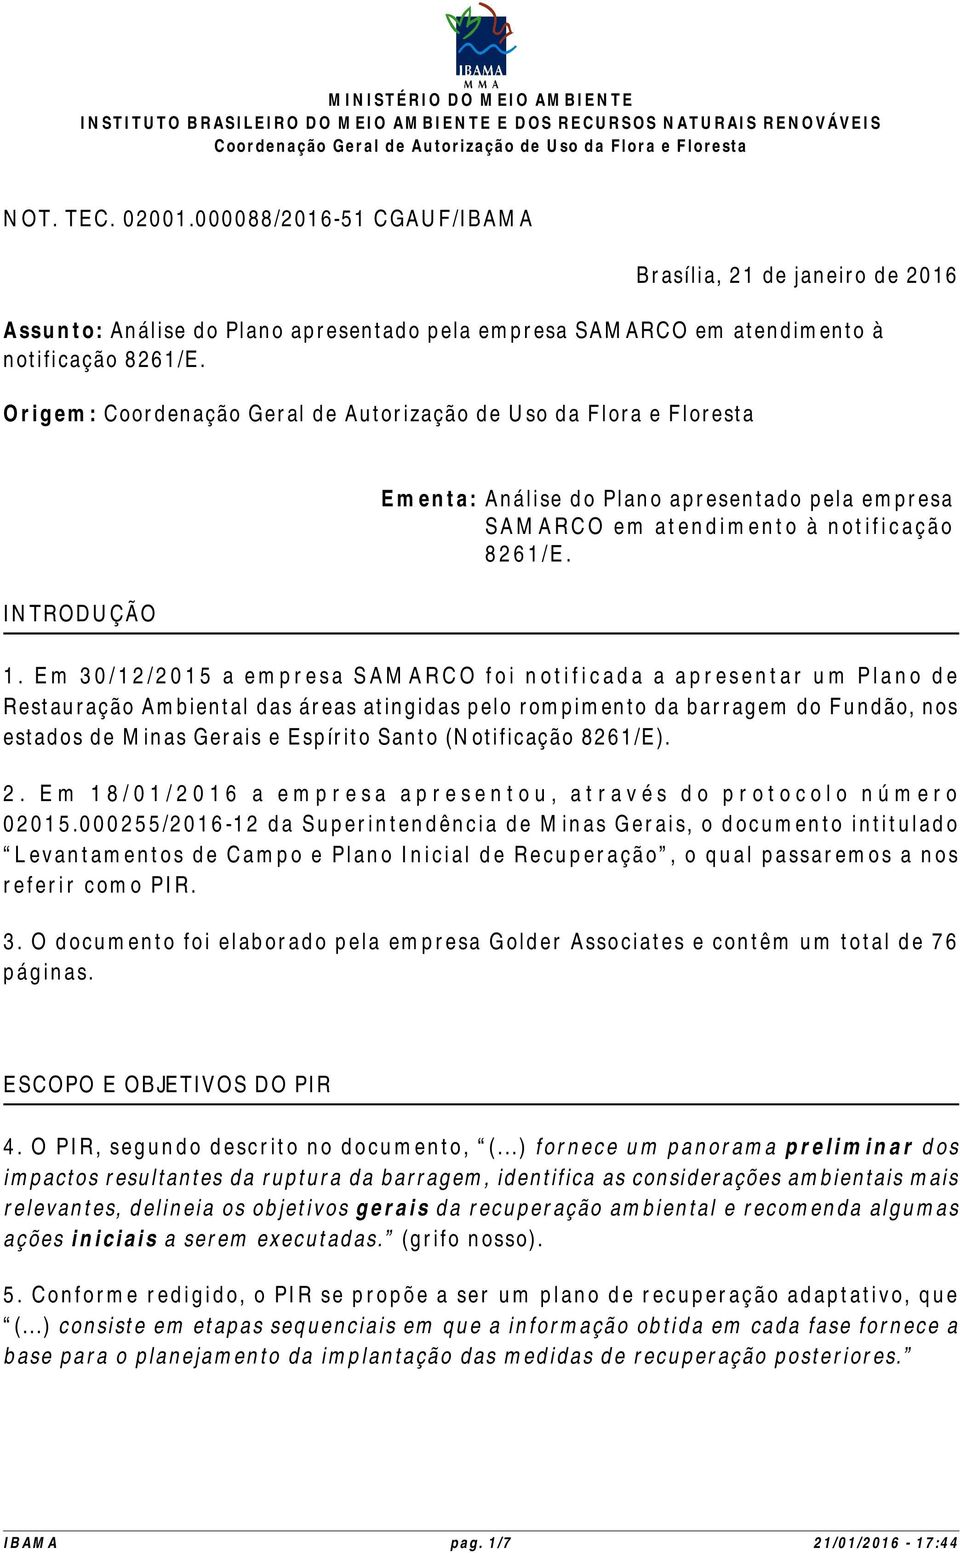 Em 30/12/2015 a empresa SAMARCO foi notificada a apresentar um Plano de Restauração Ambiental das áreas atingidas pelo rompimento da barragem do Fundão, nos estados de Minas Gerais e Espírito Santo